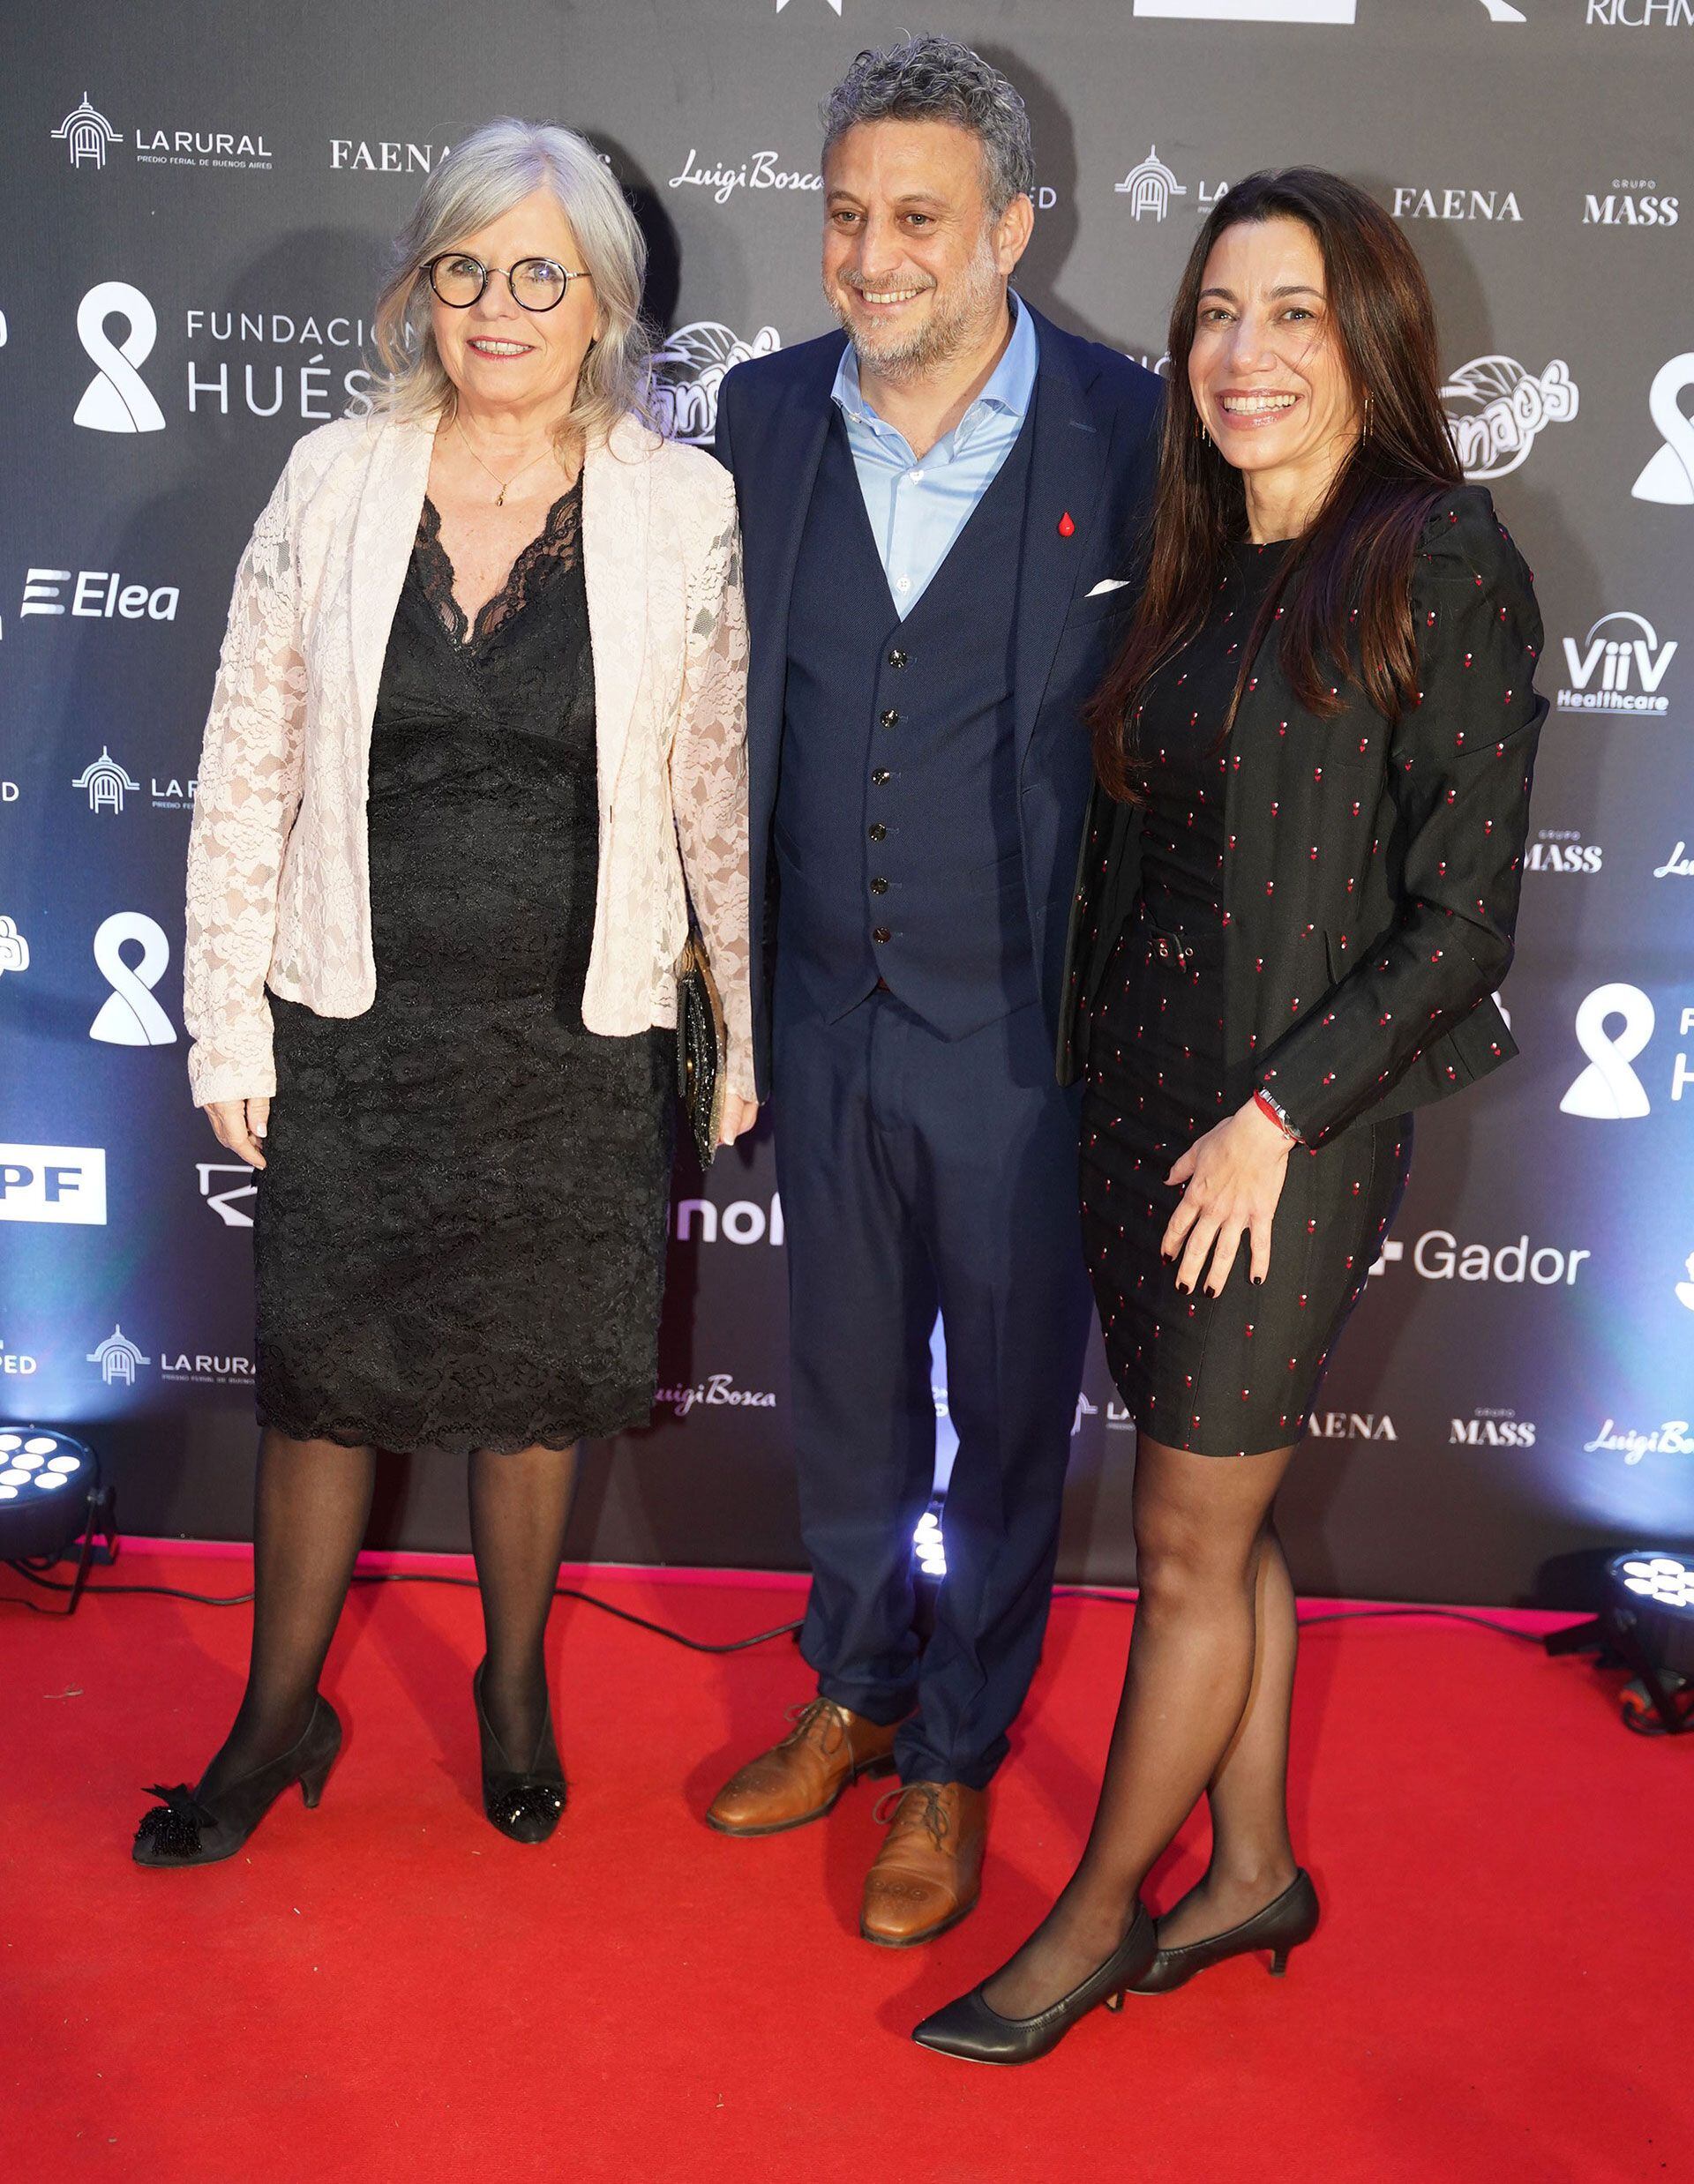 La legisladora porteña, Ana María Bou Pérez, ex ministra de Salud porteña, junto a Leandro Cahn y Analía Baum